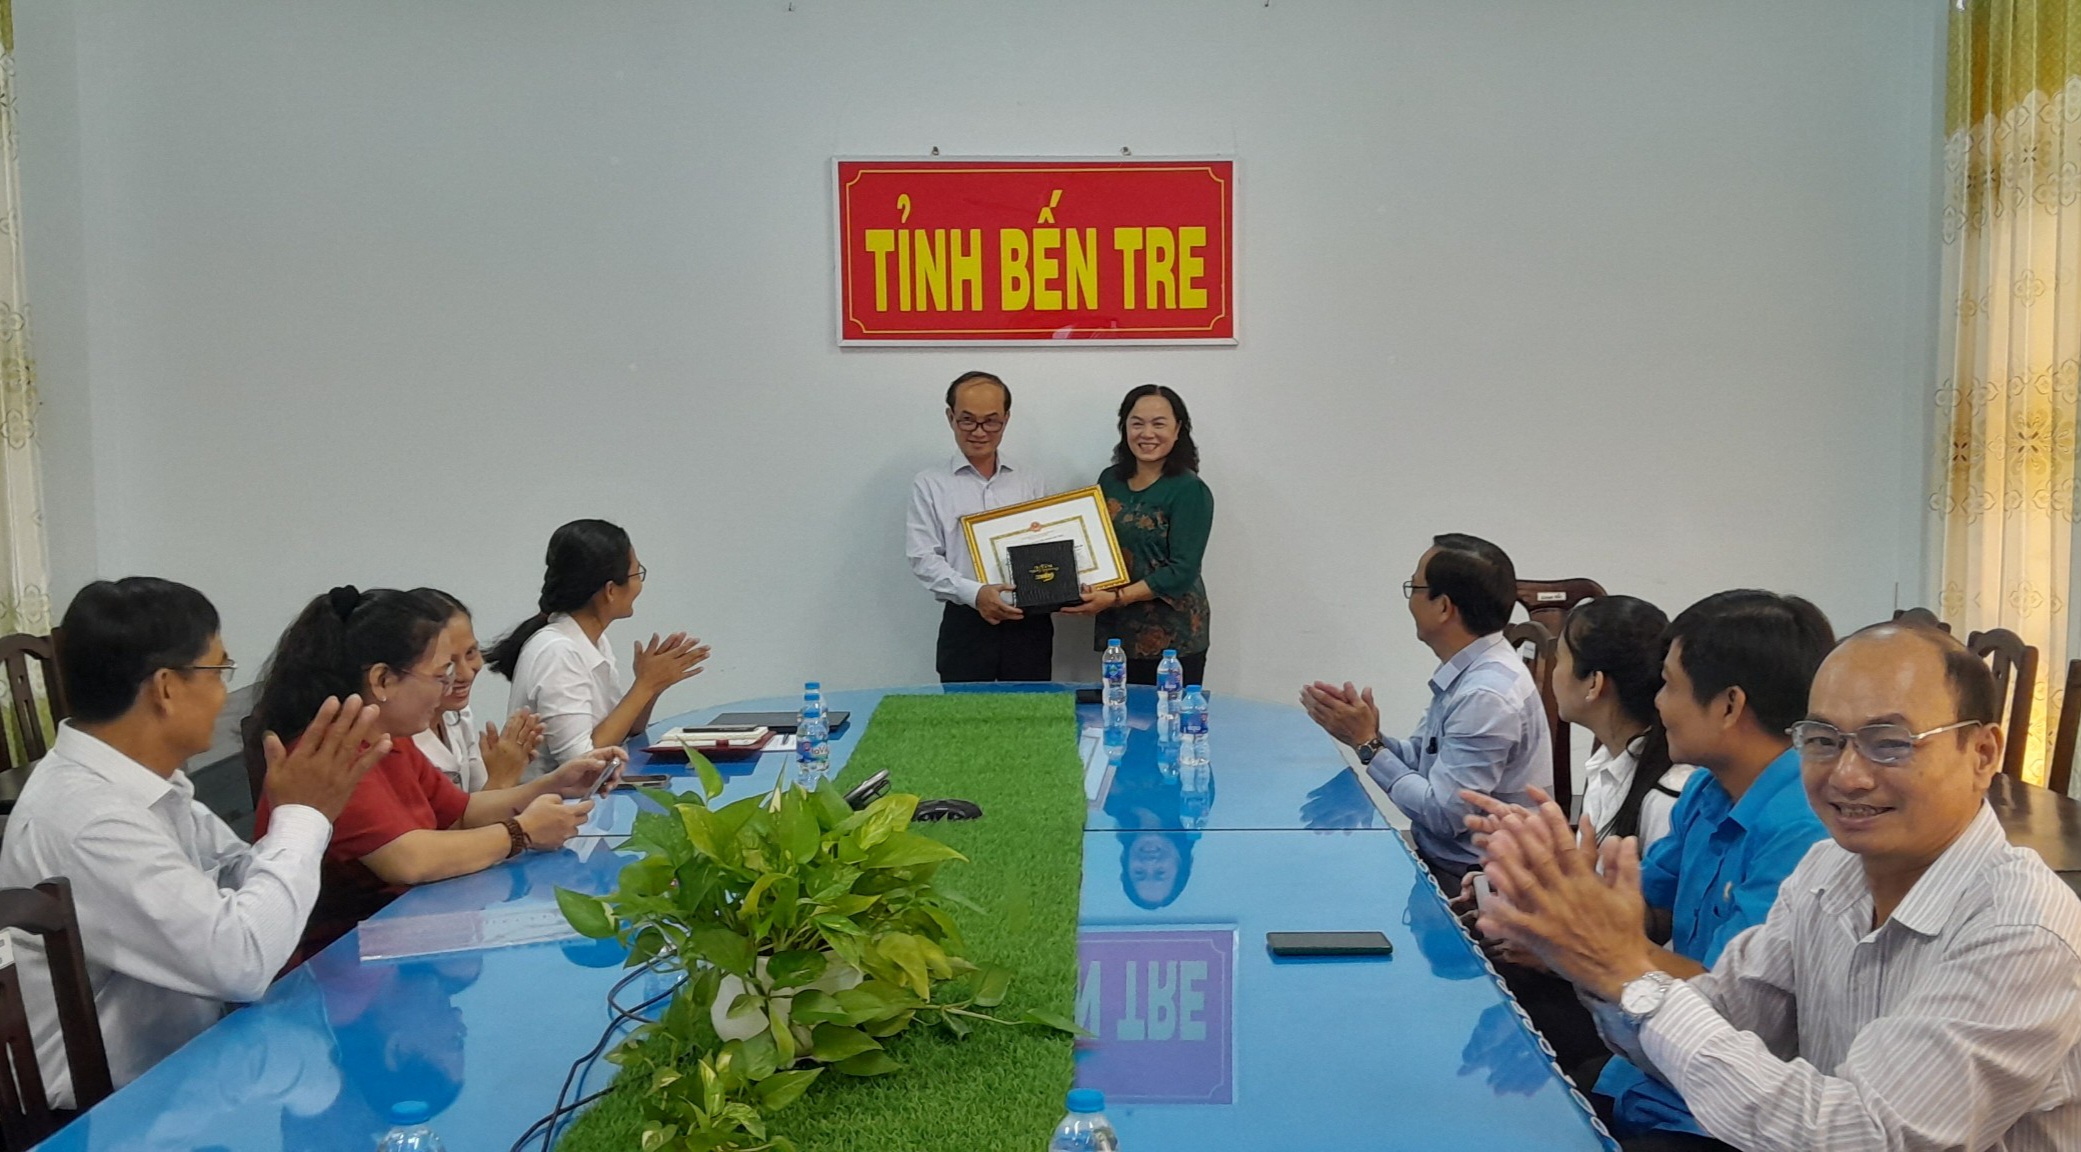 Bà Nguyễn Thị Kiều Oanh, Chủ tịch Hội bảo vệ người tiêu dùng tỉnh Bến Tre trao bằng khen của Chủ tịch Hội bảo vệ người tiêu dùng Việt Nam cho ông Nguyễn Văn Oanh.